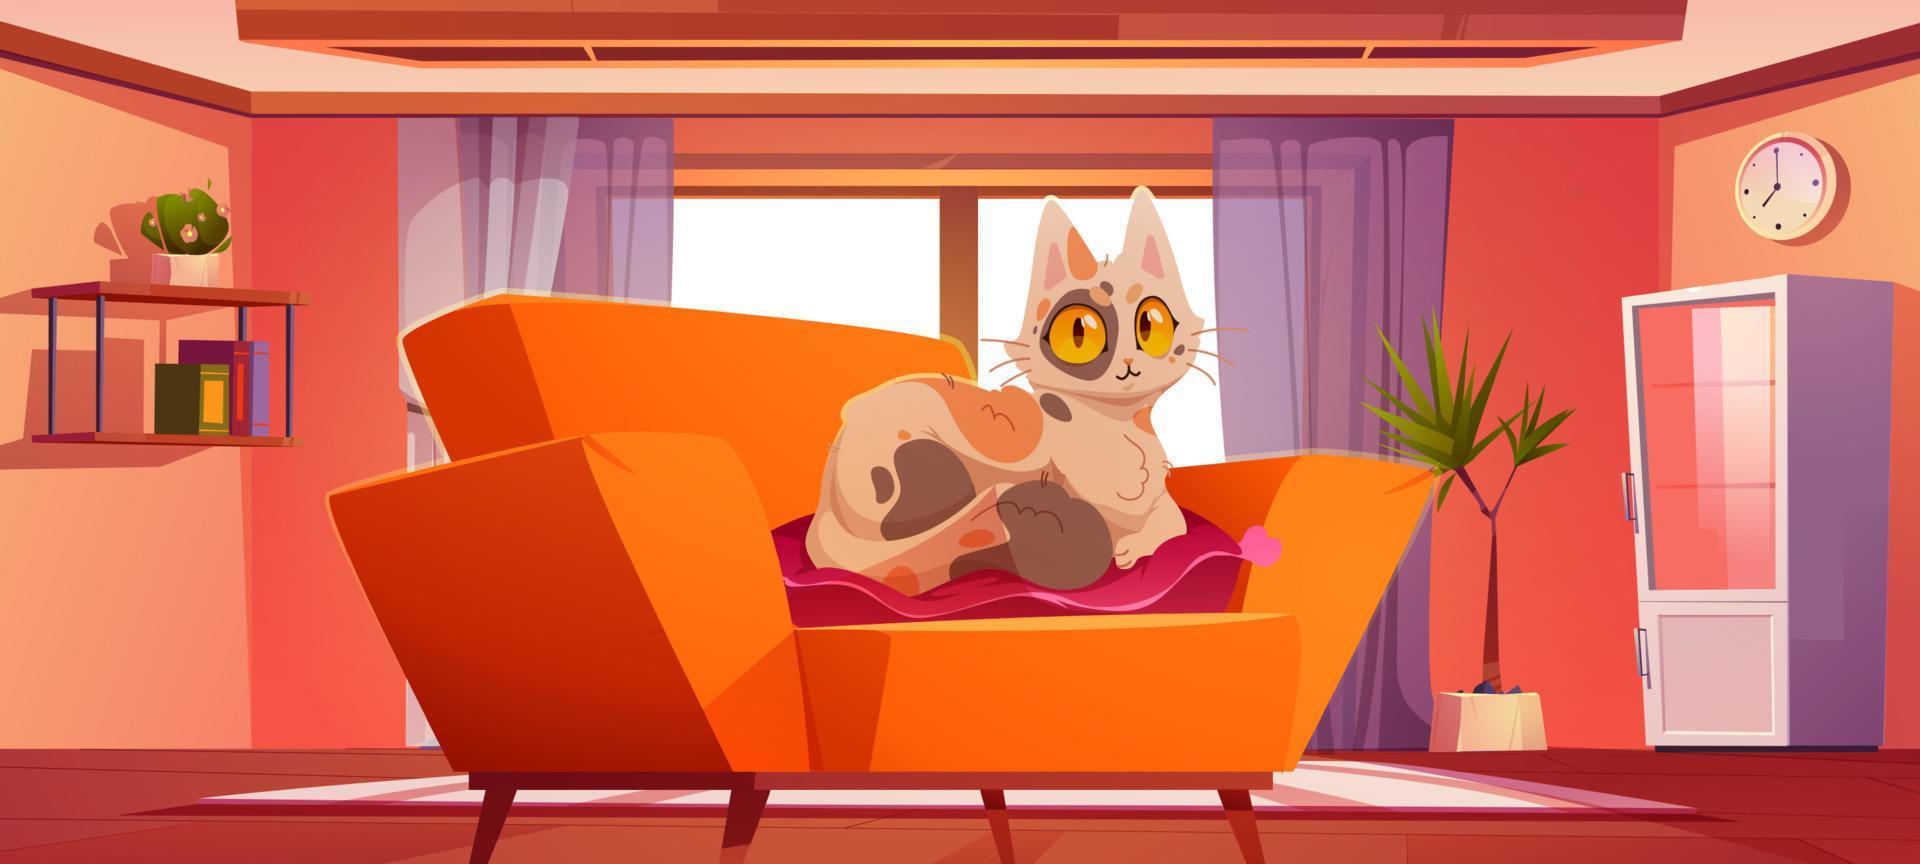 salon avec chat mignon allongé sur un oreiller sur un canapé vecteur